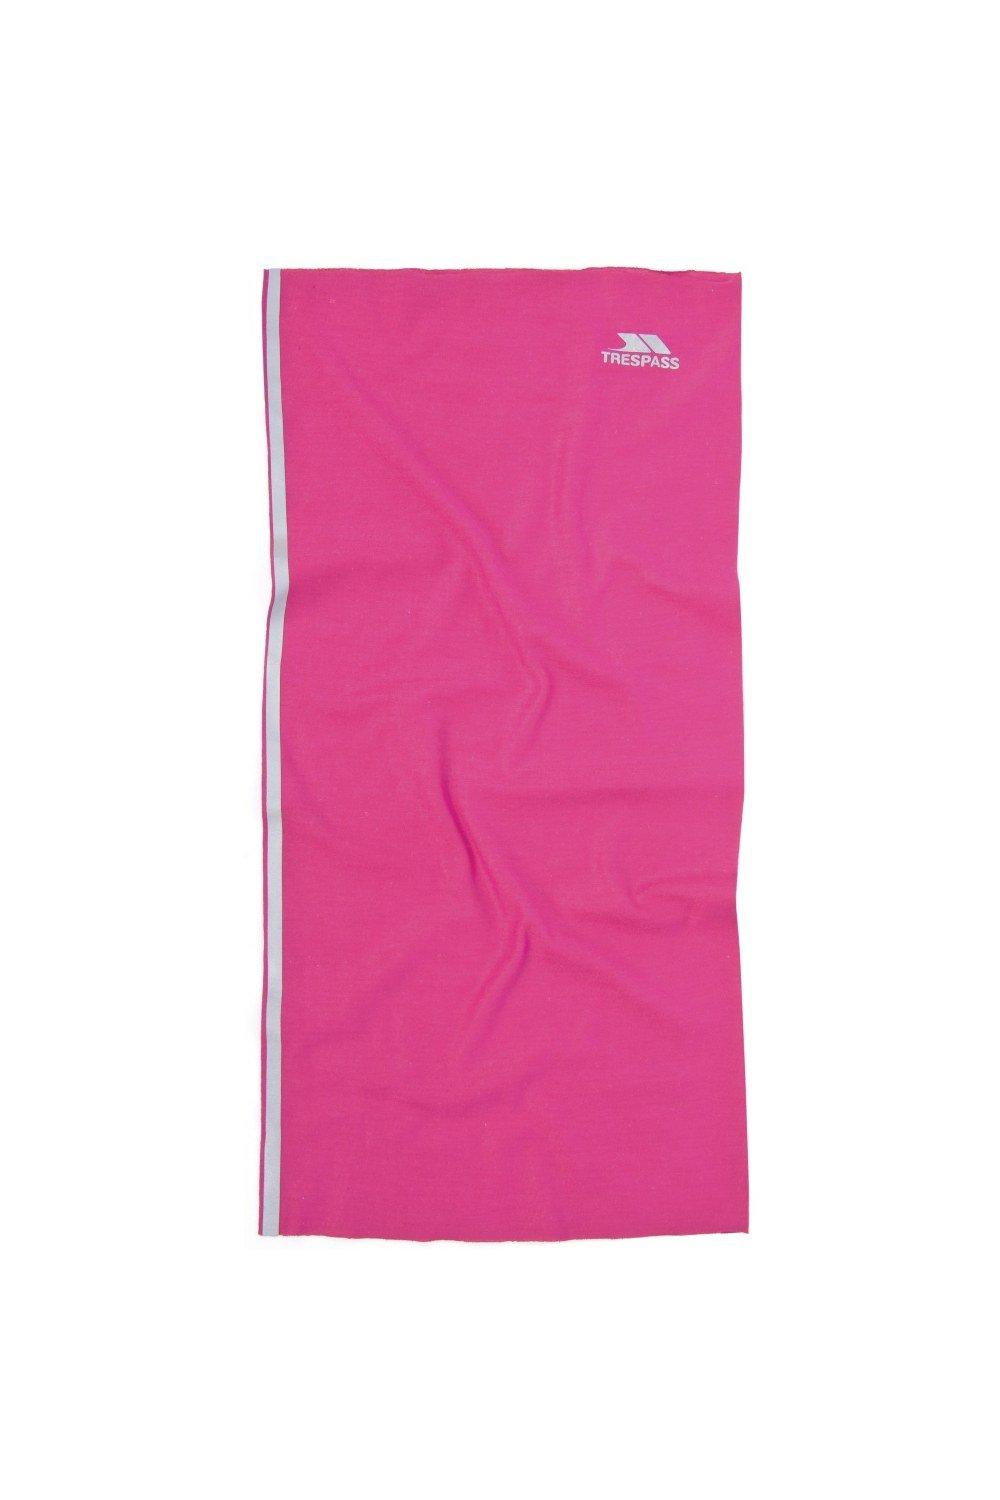 Многофункциональный шейный шарф Tattler Trespass, розовый цена и фото